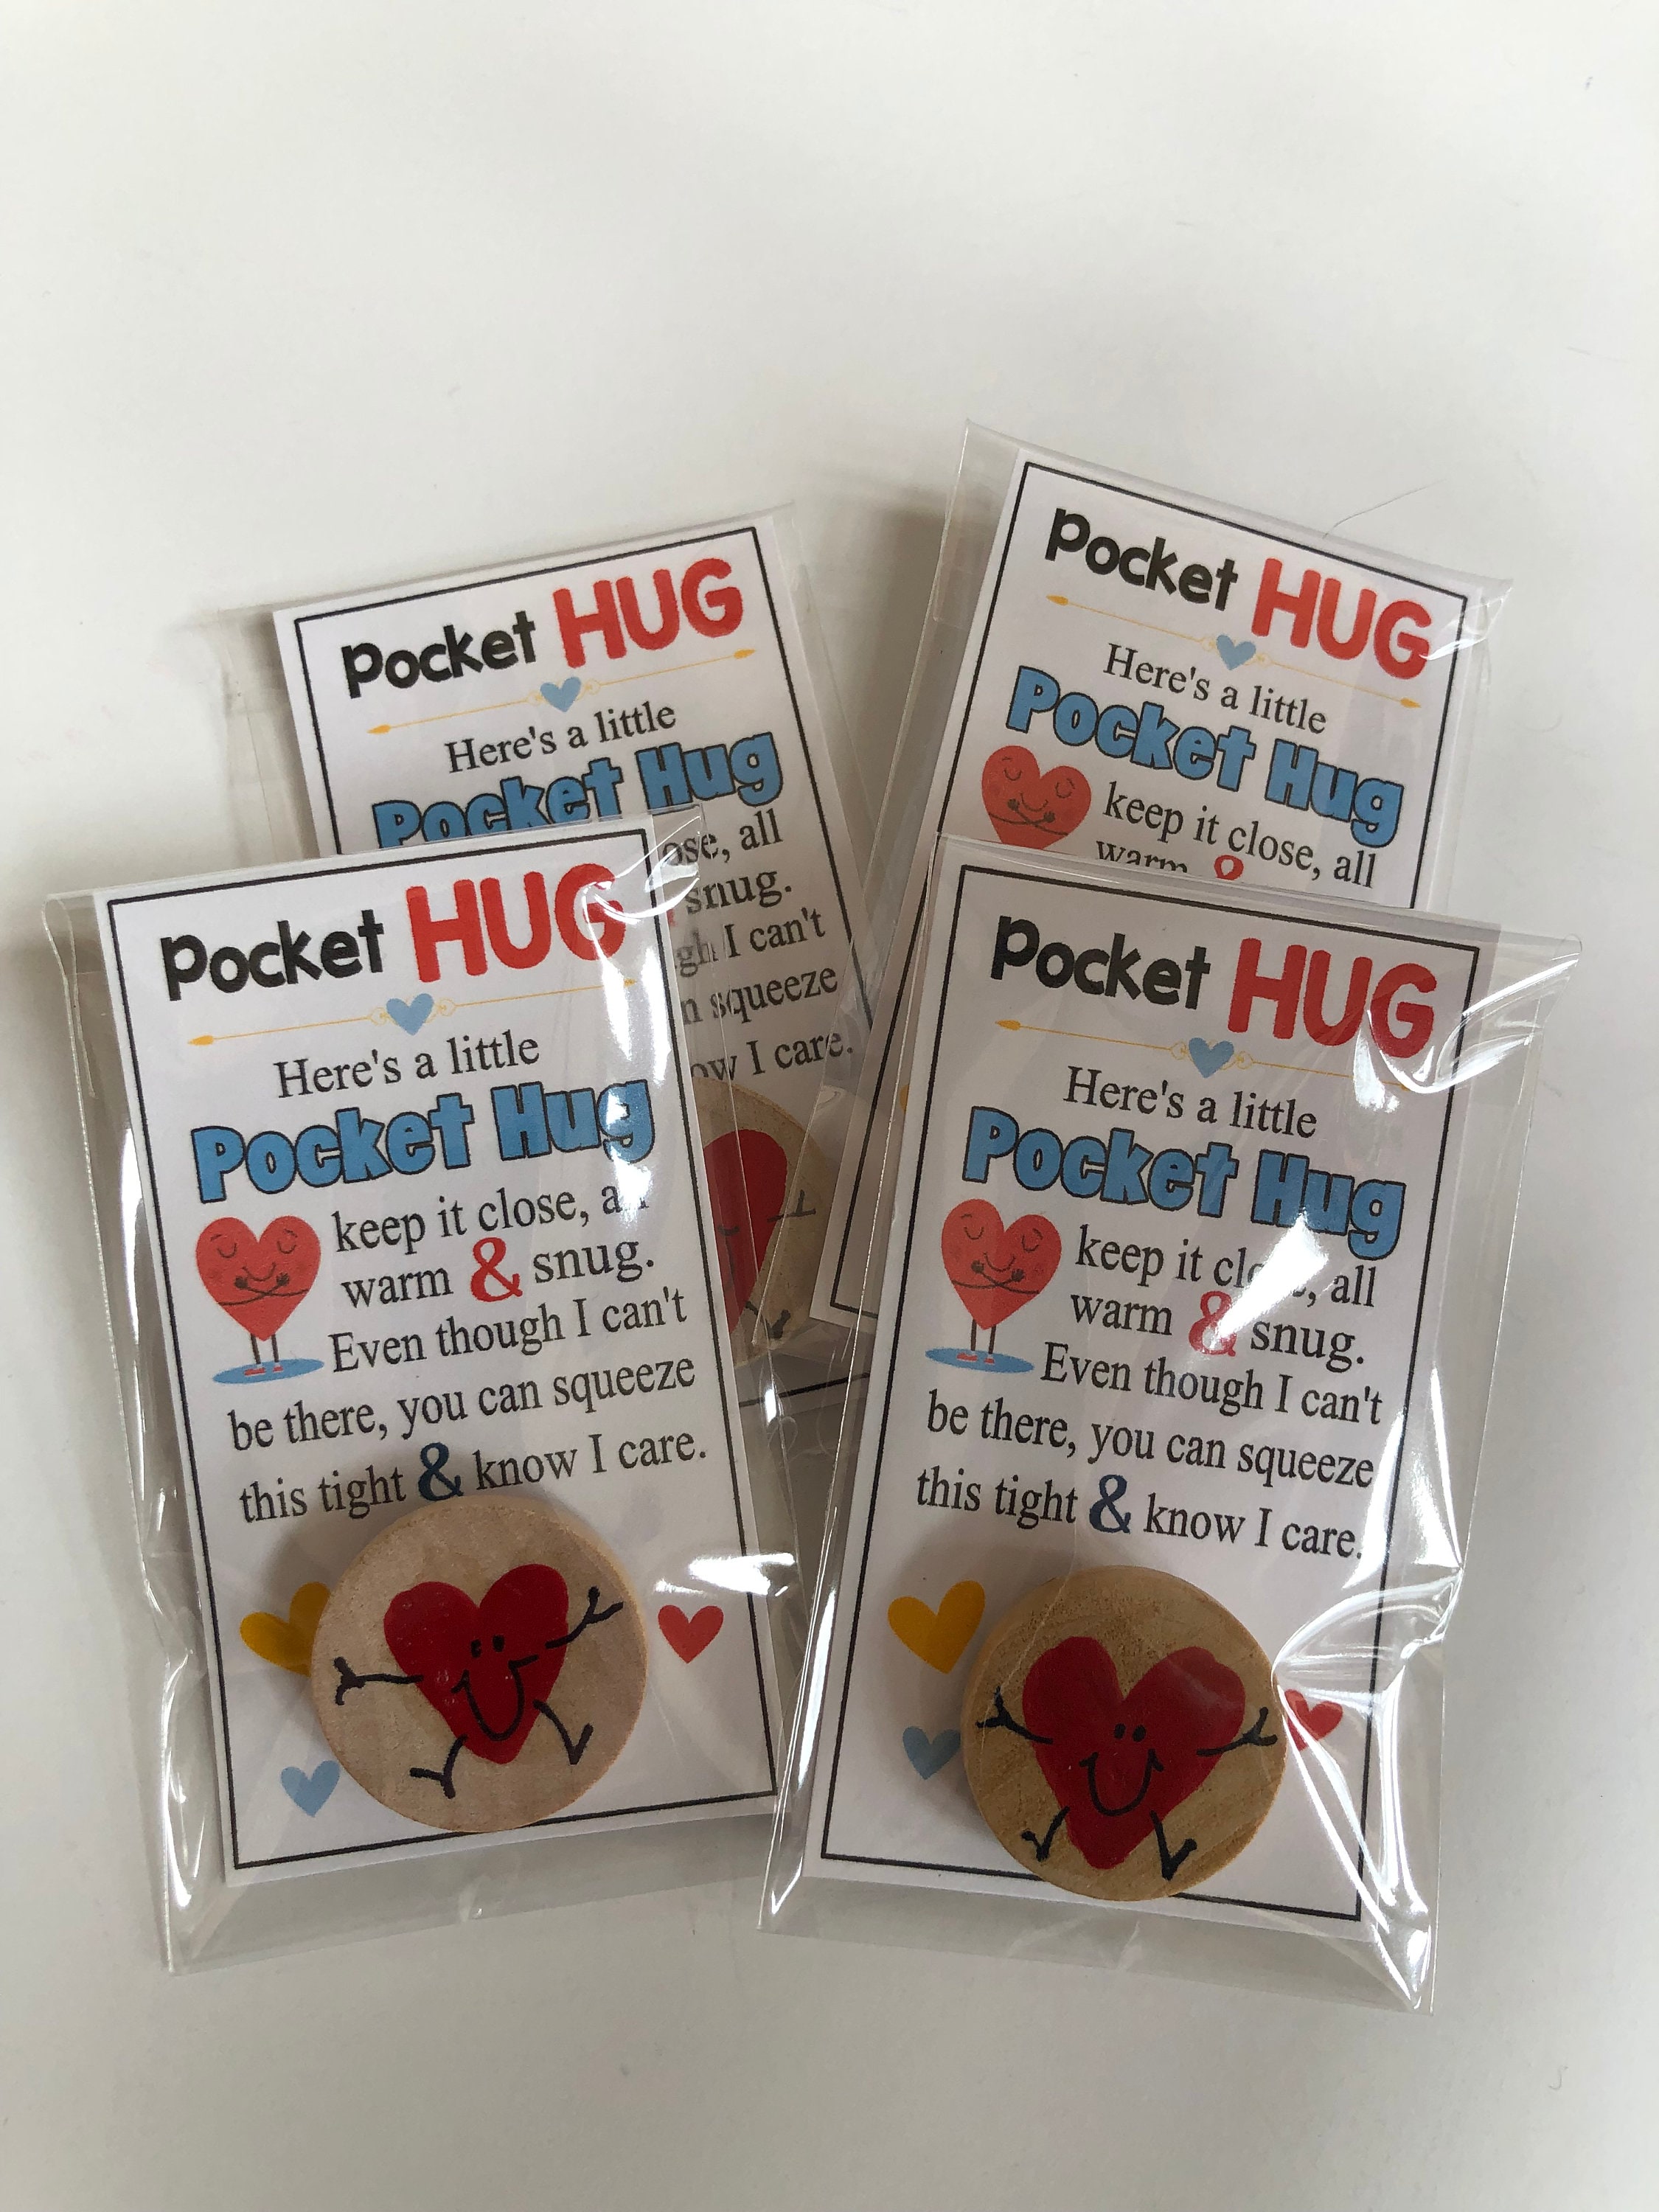 Pocket Hug Gifts for Elderly Women, Unique and Sentimental Pocket Prayer  Quilt, Mini Quilt for Loved Ones, Loving Quilted Pocket Hug Hearts 